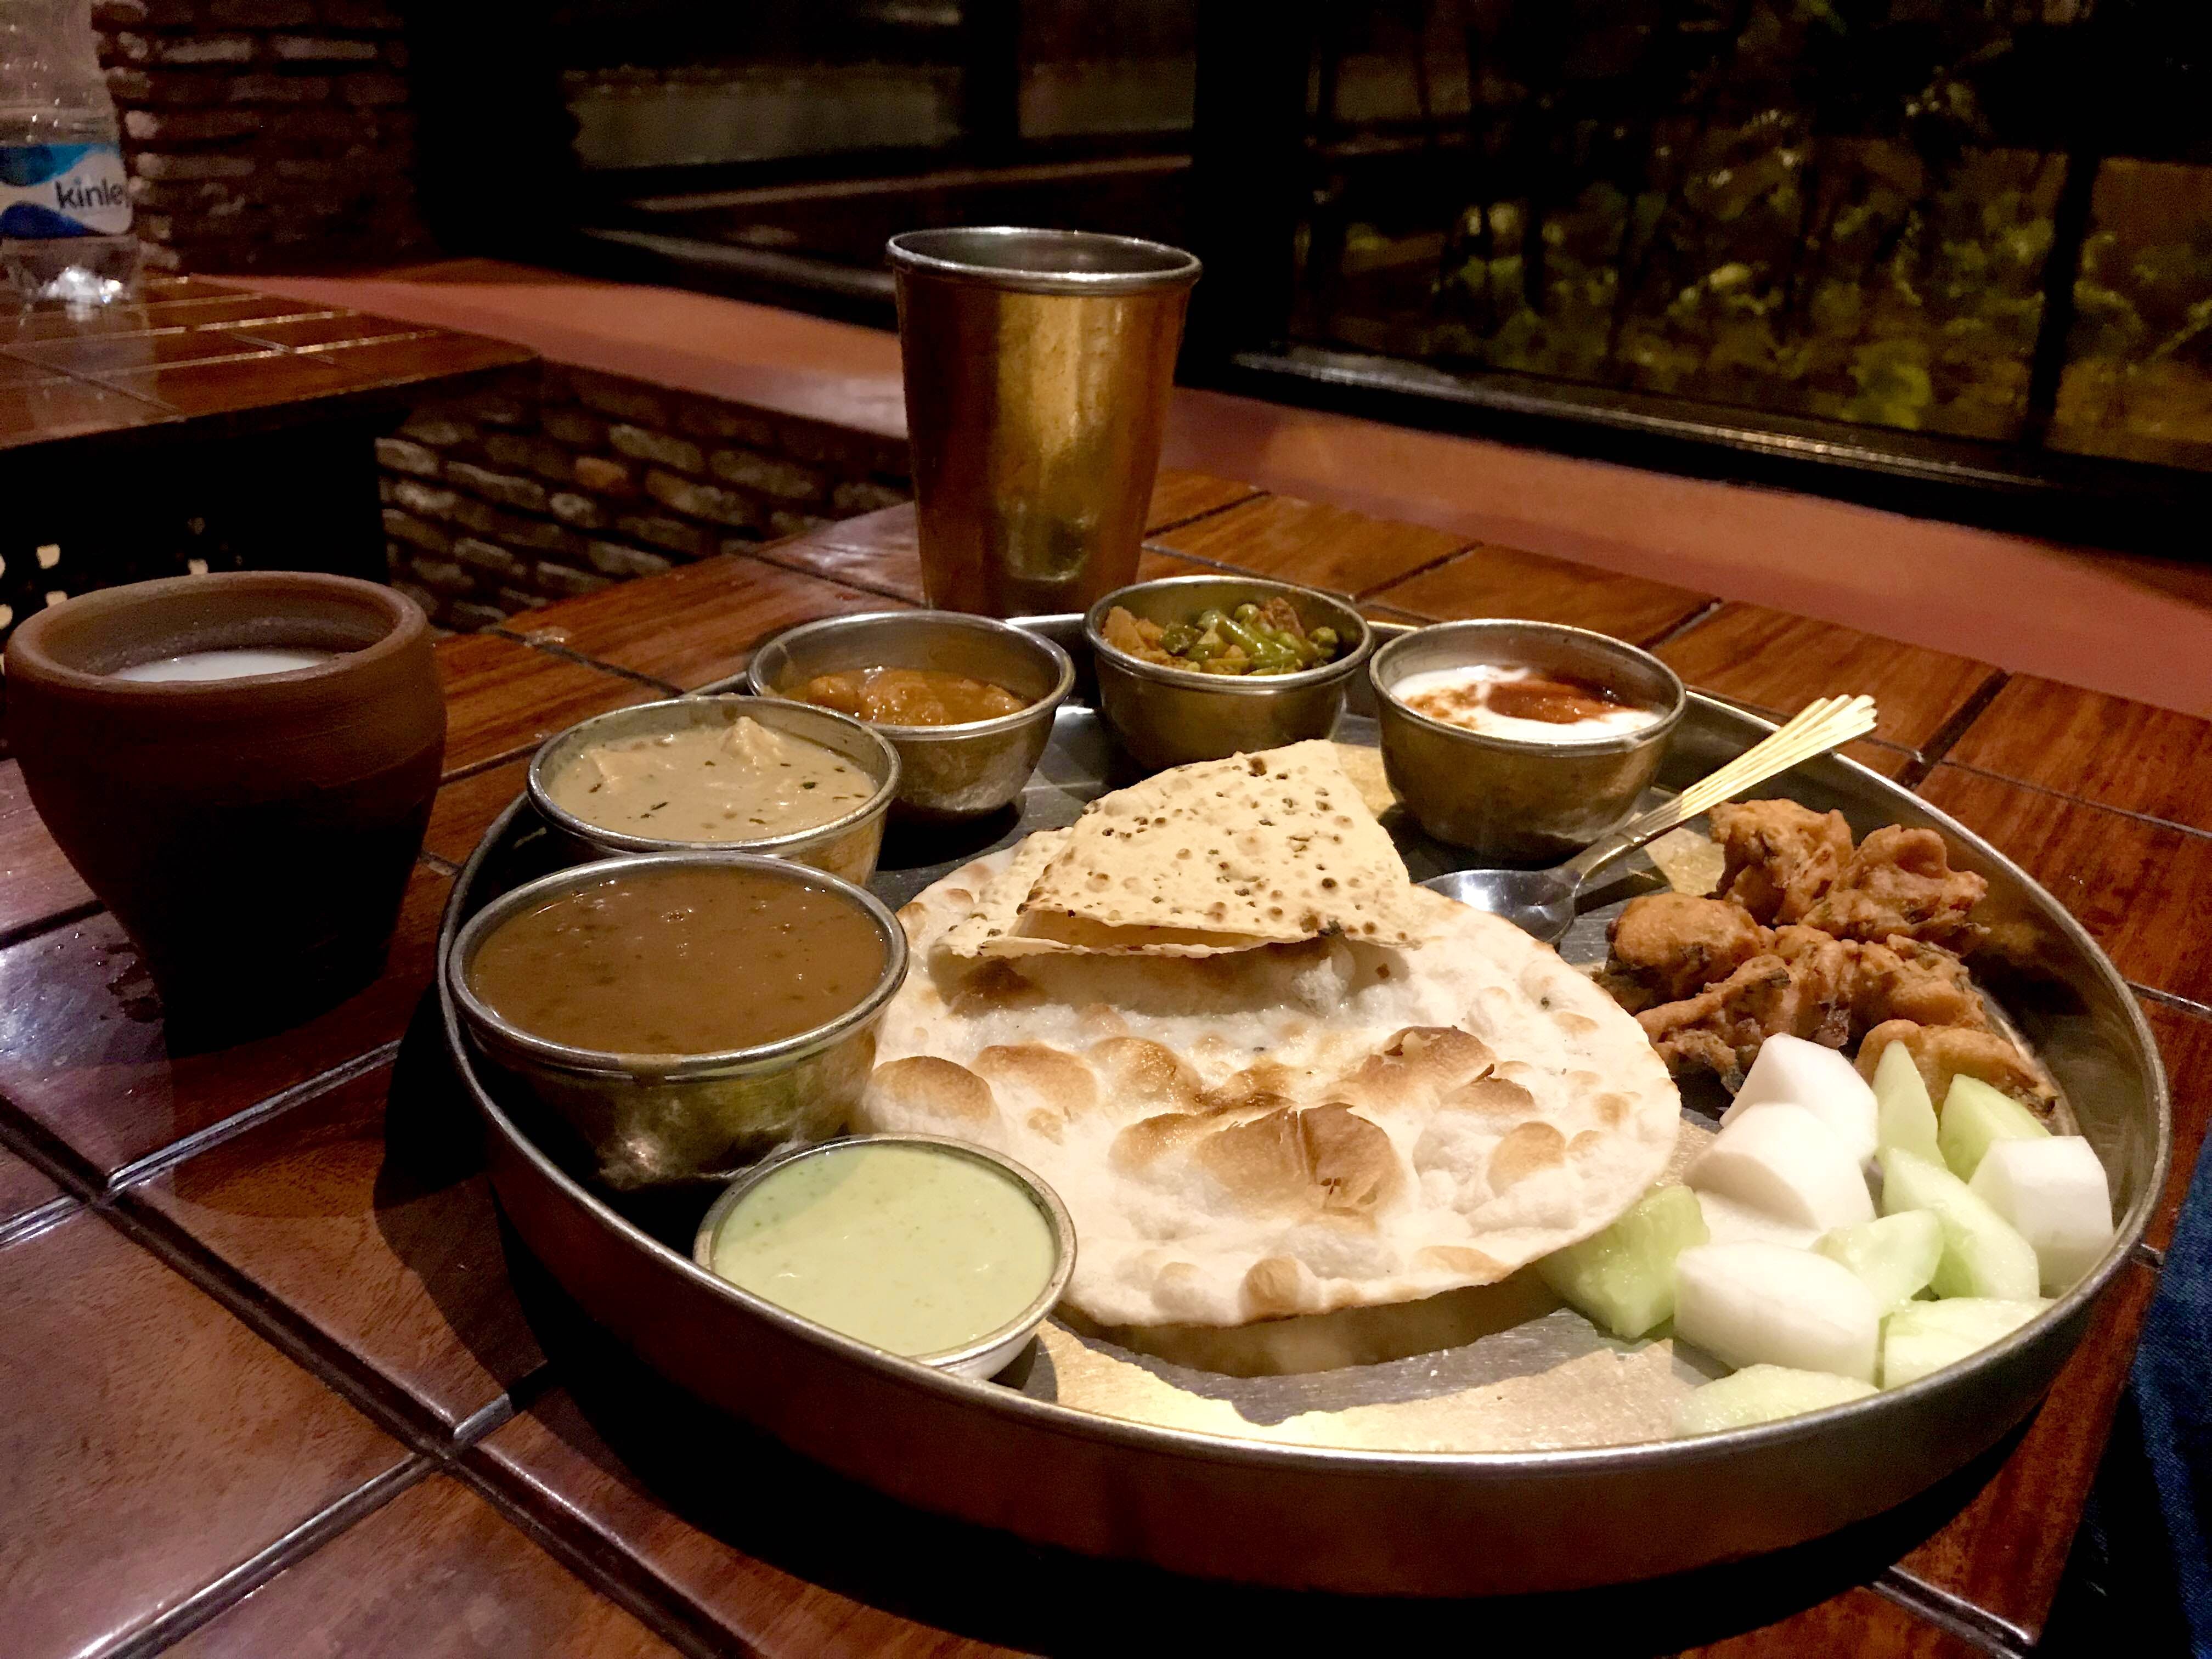 Dish,Food,Cuisine,Ingredient,Meal,Naan,Brunch,Indian cuisine,Breakfast,Flatbread